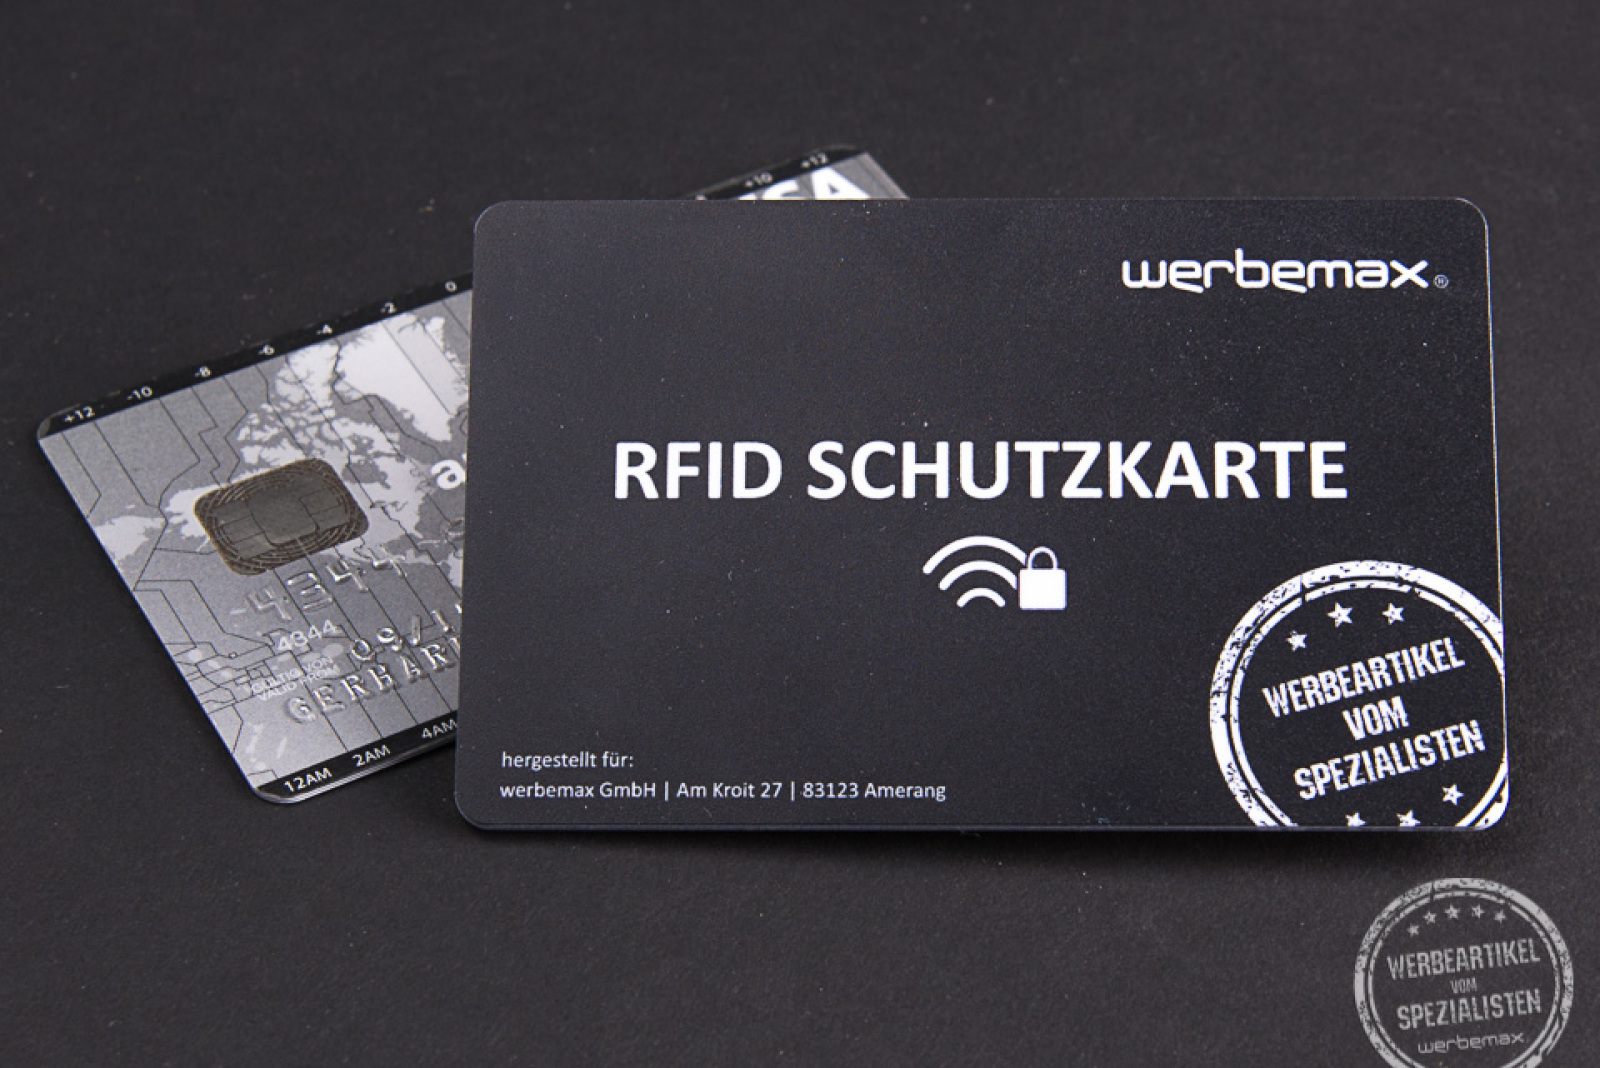 RFID Schutzkarte Beispiel werbemax